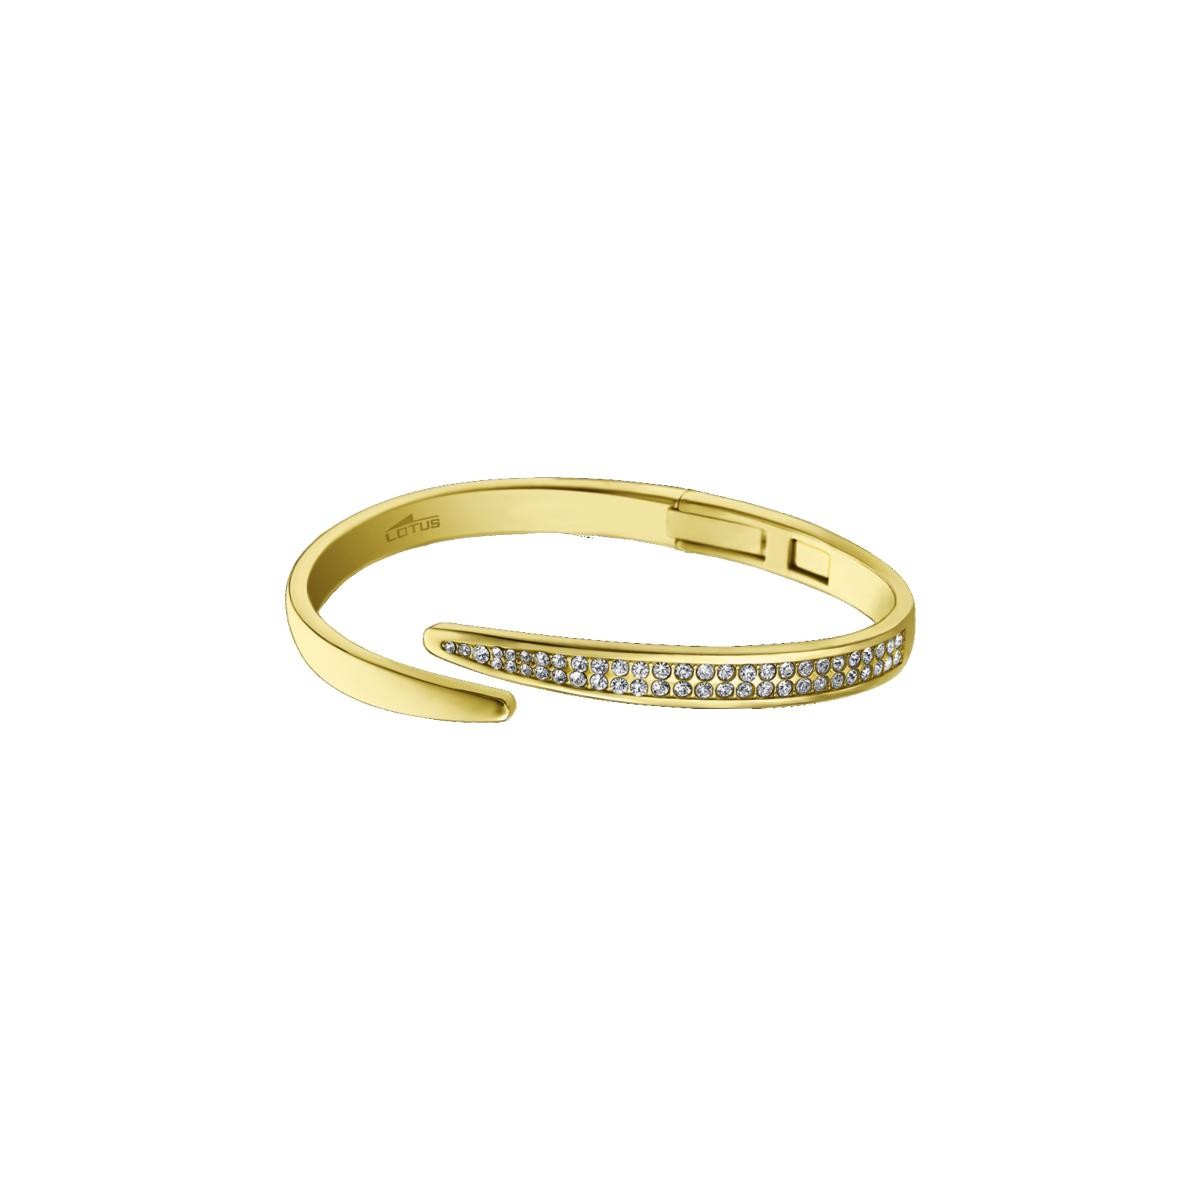 Promo : Bracelet Lotus Style LS1845-2/2 - bliss Acier Femme